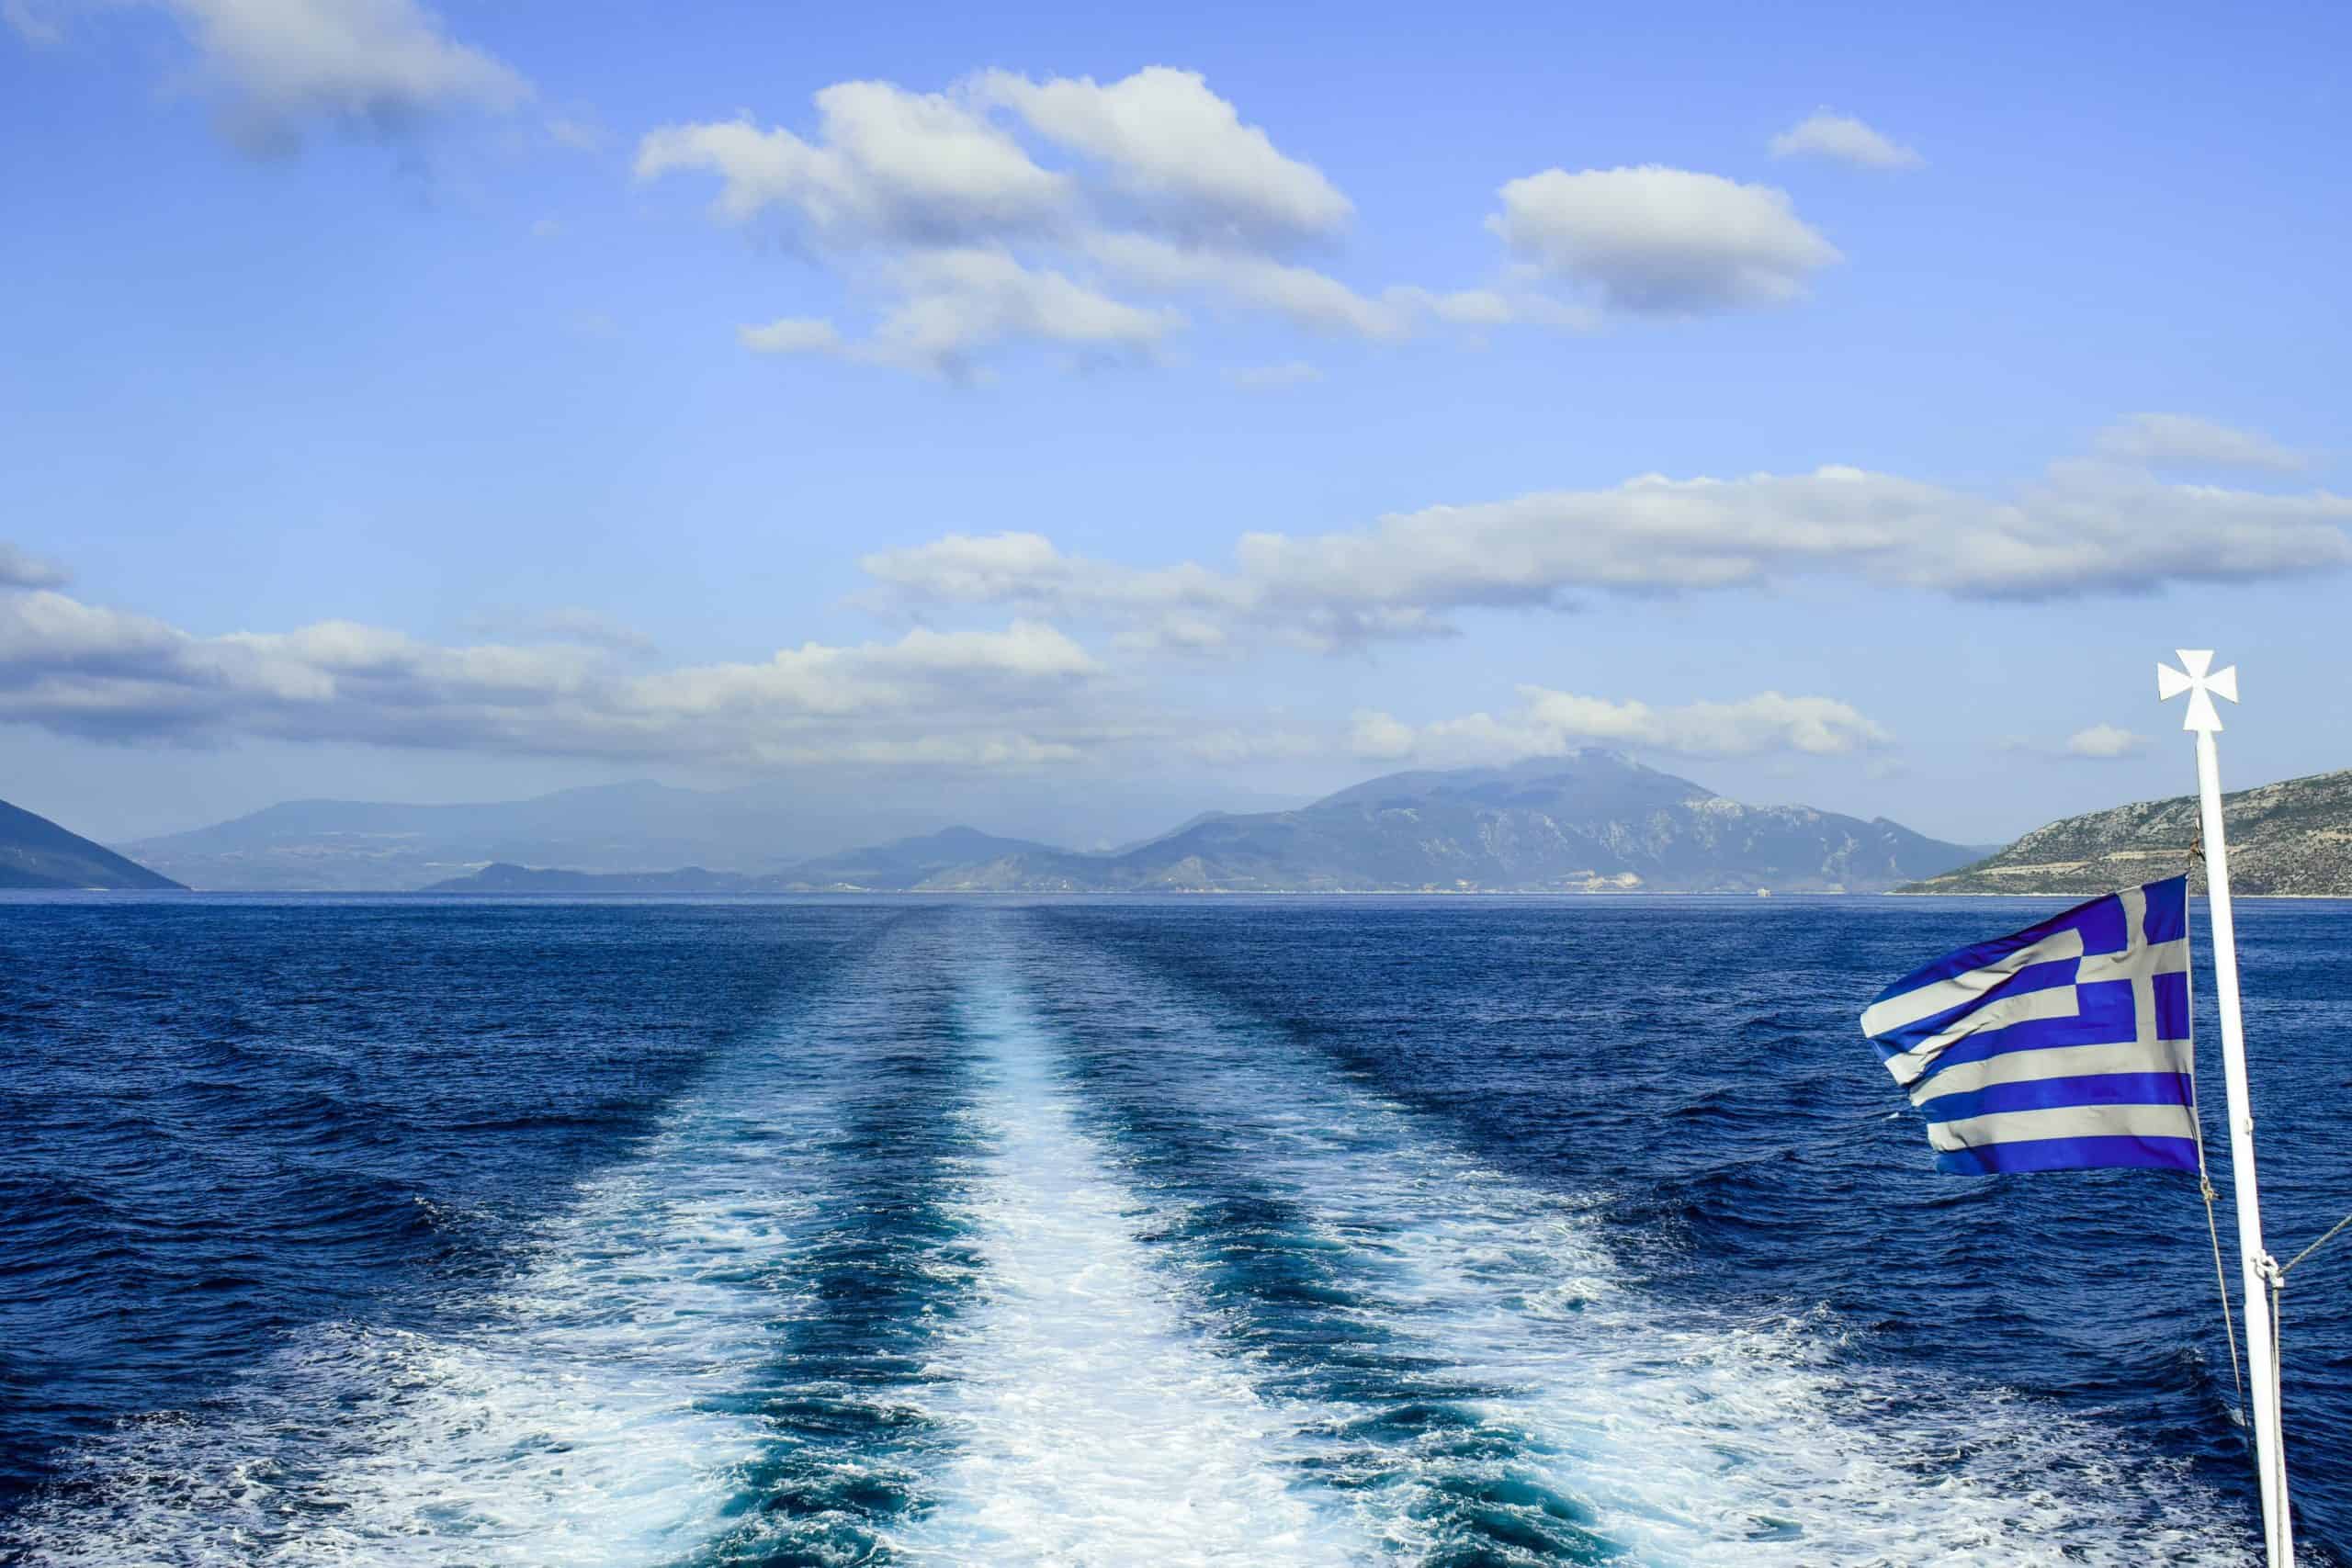 Reserve un ferry en Grecia